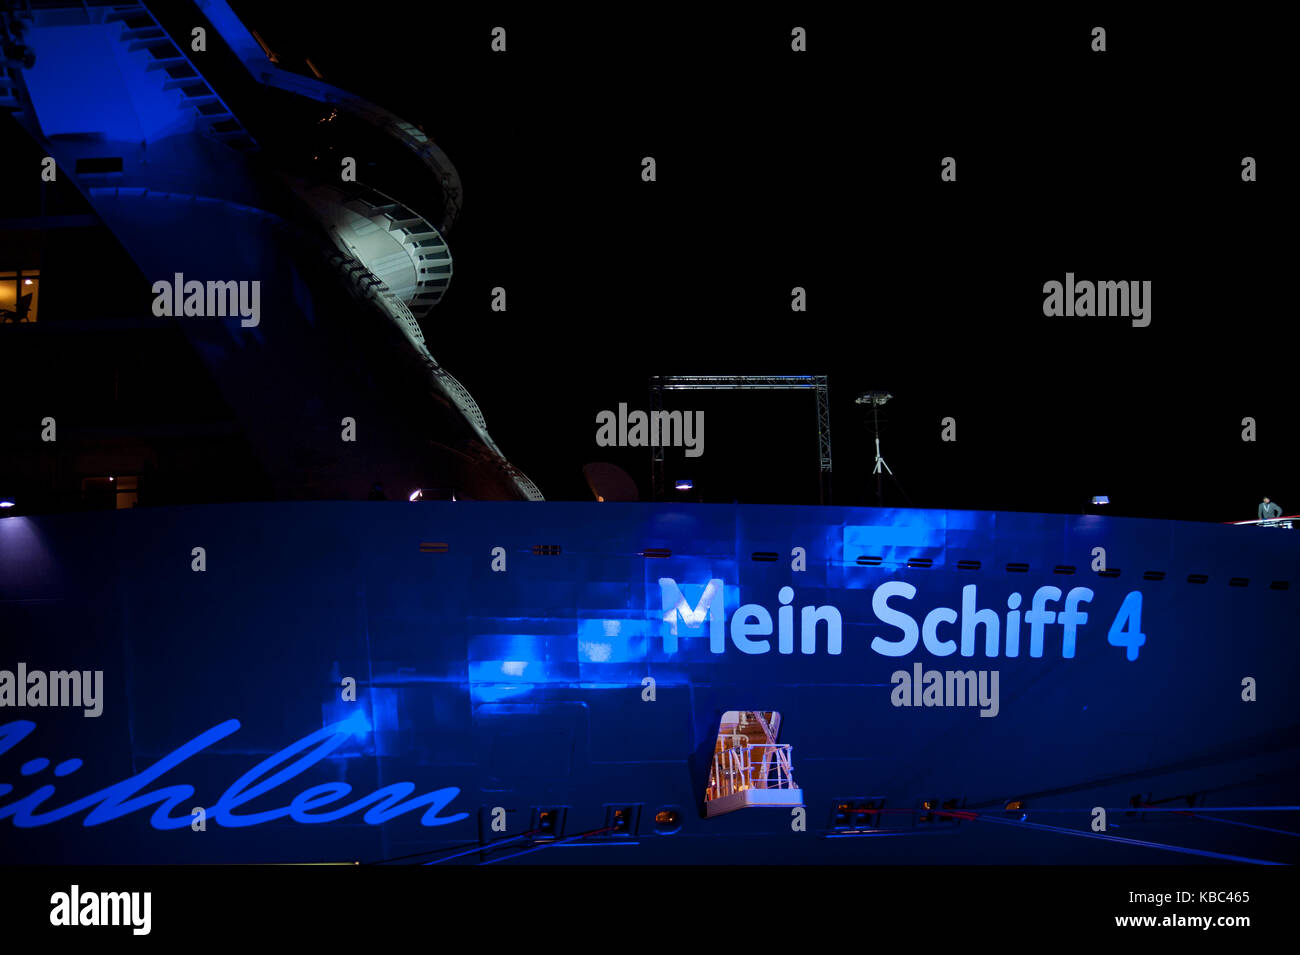 Kiel, Allemagne - 05 juin 2015 : TUI Cruises baptise son nouveau paquebot 'Mein Schiff 4'. usage éditorial uniquement. Banque D'Images